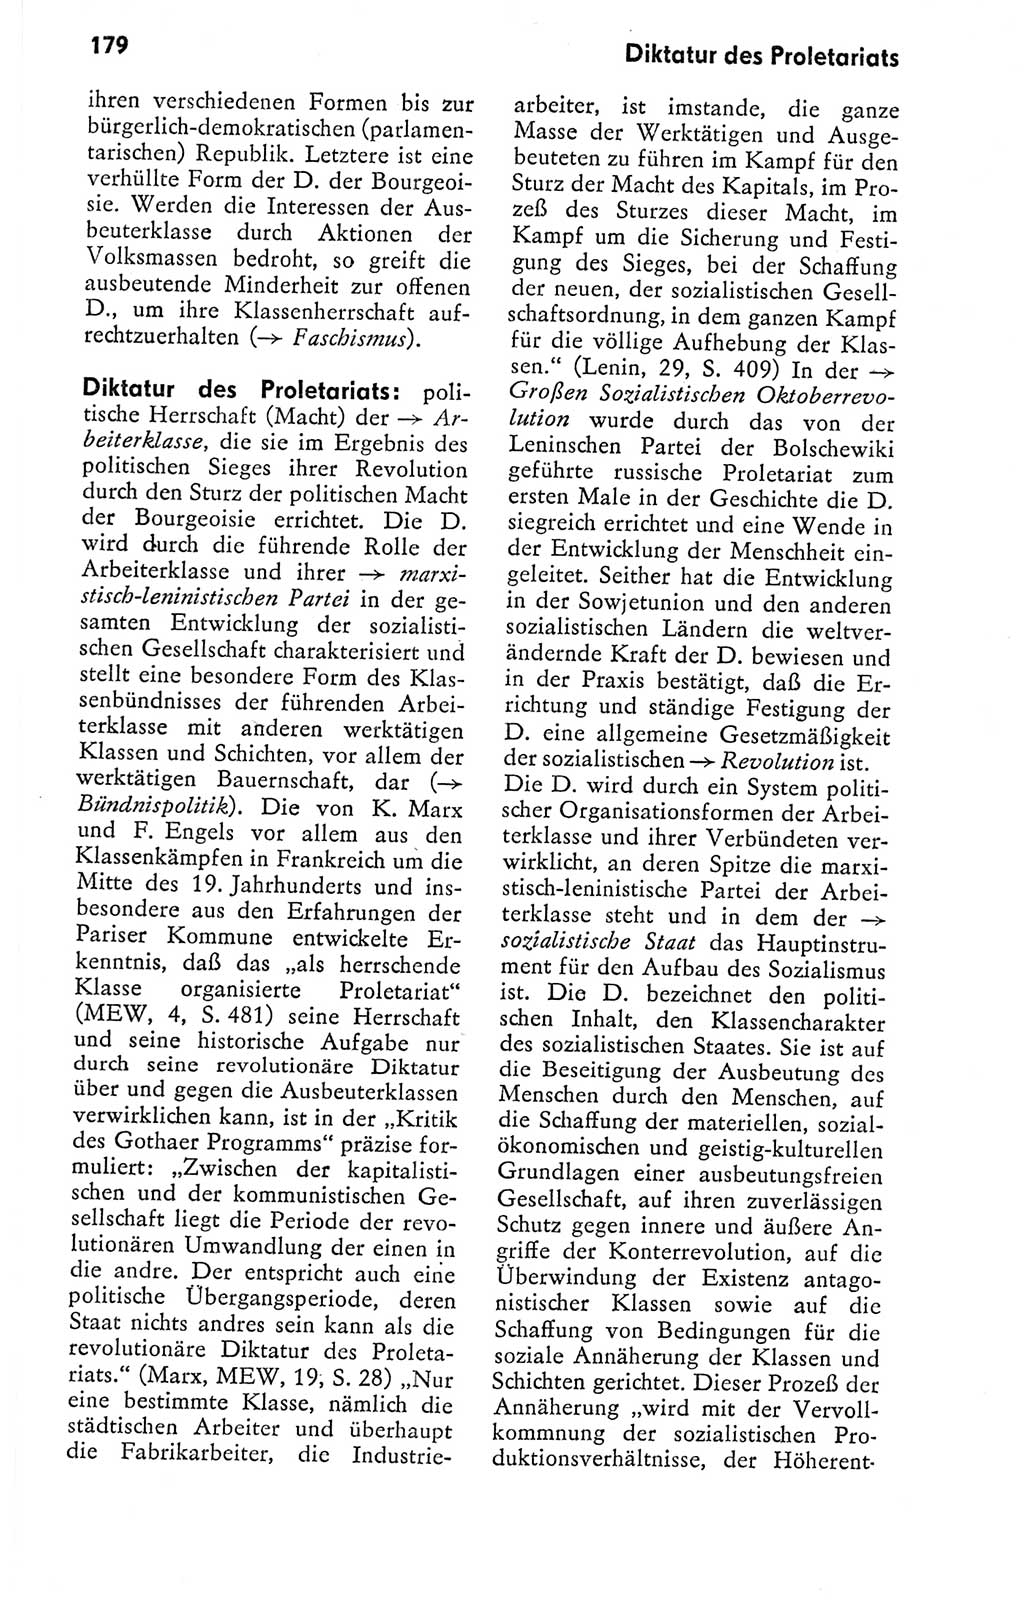 Kleines politisches Wörterbuch [Deutsche Demokratische Republik (DDR)] 1978, Seite 179 (Kl. pol. Wb. DDR 1978, S. 179)